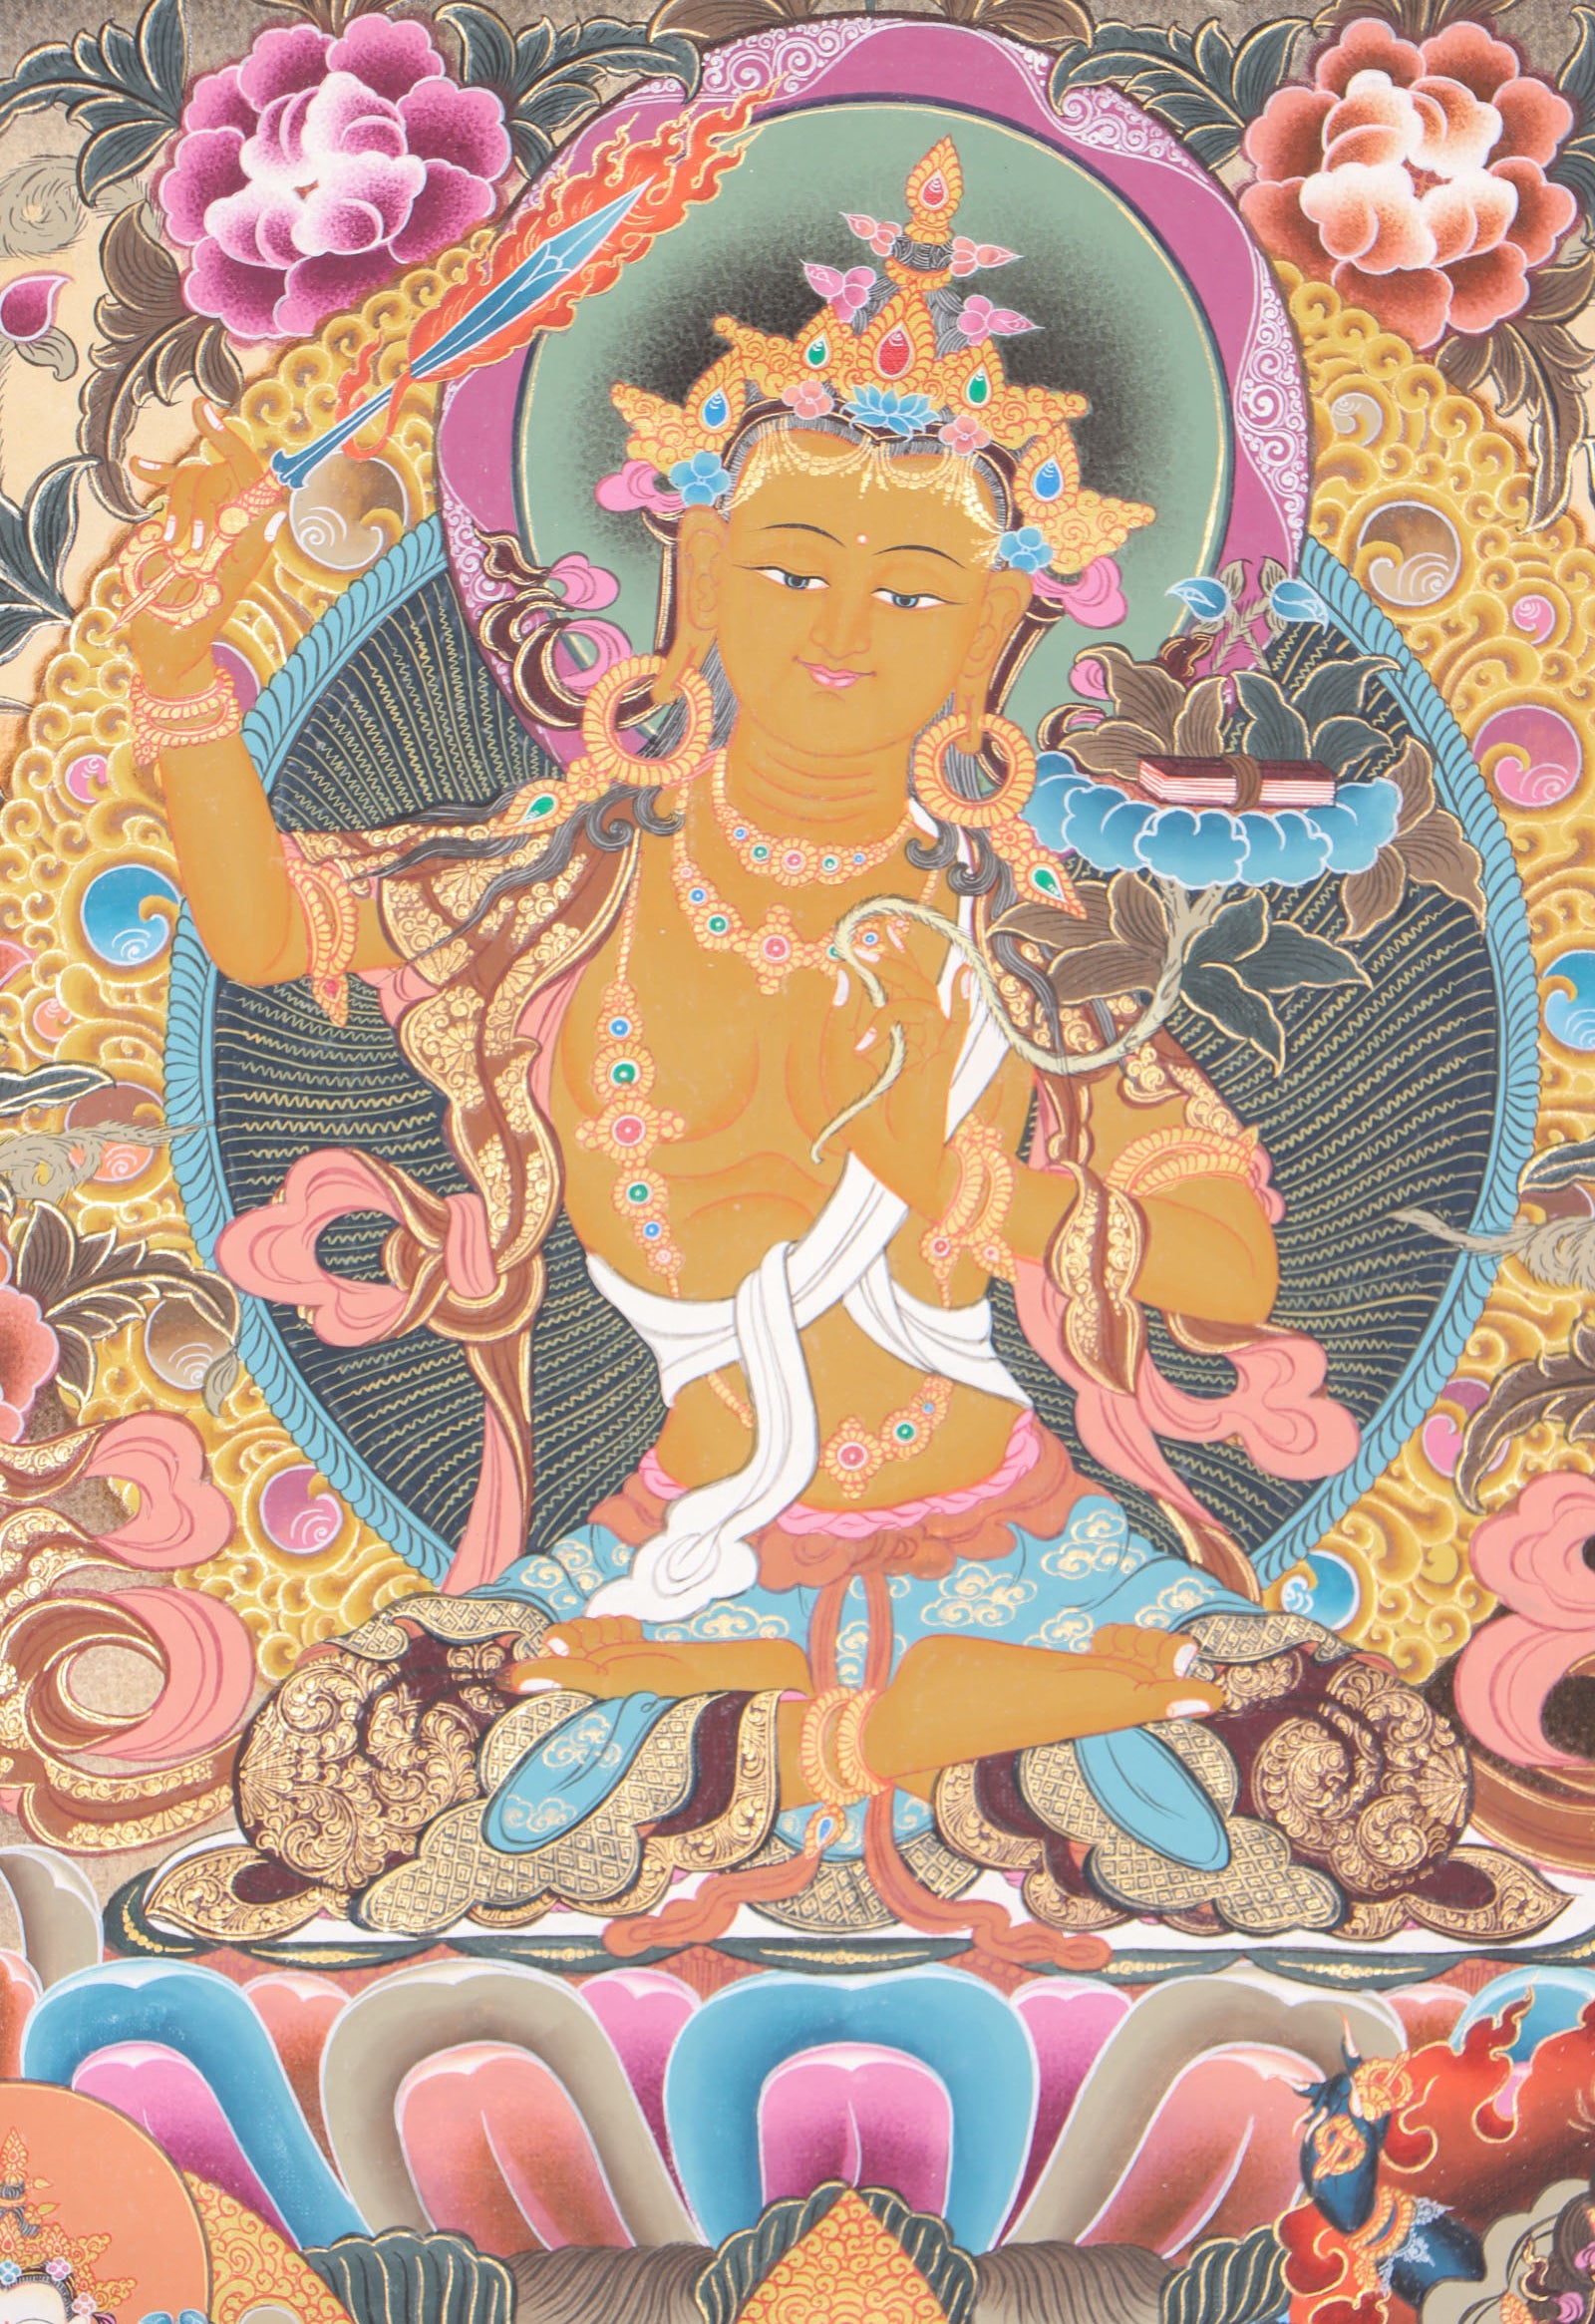 Manjushri Thangka for wisdom and compassion.